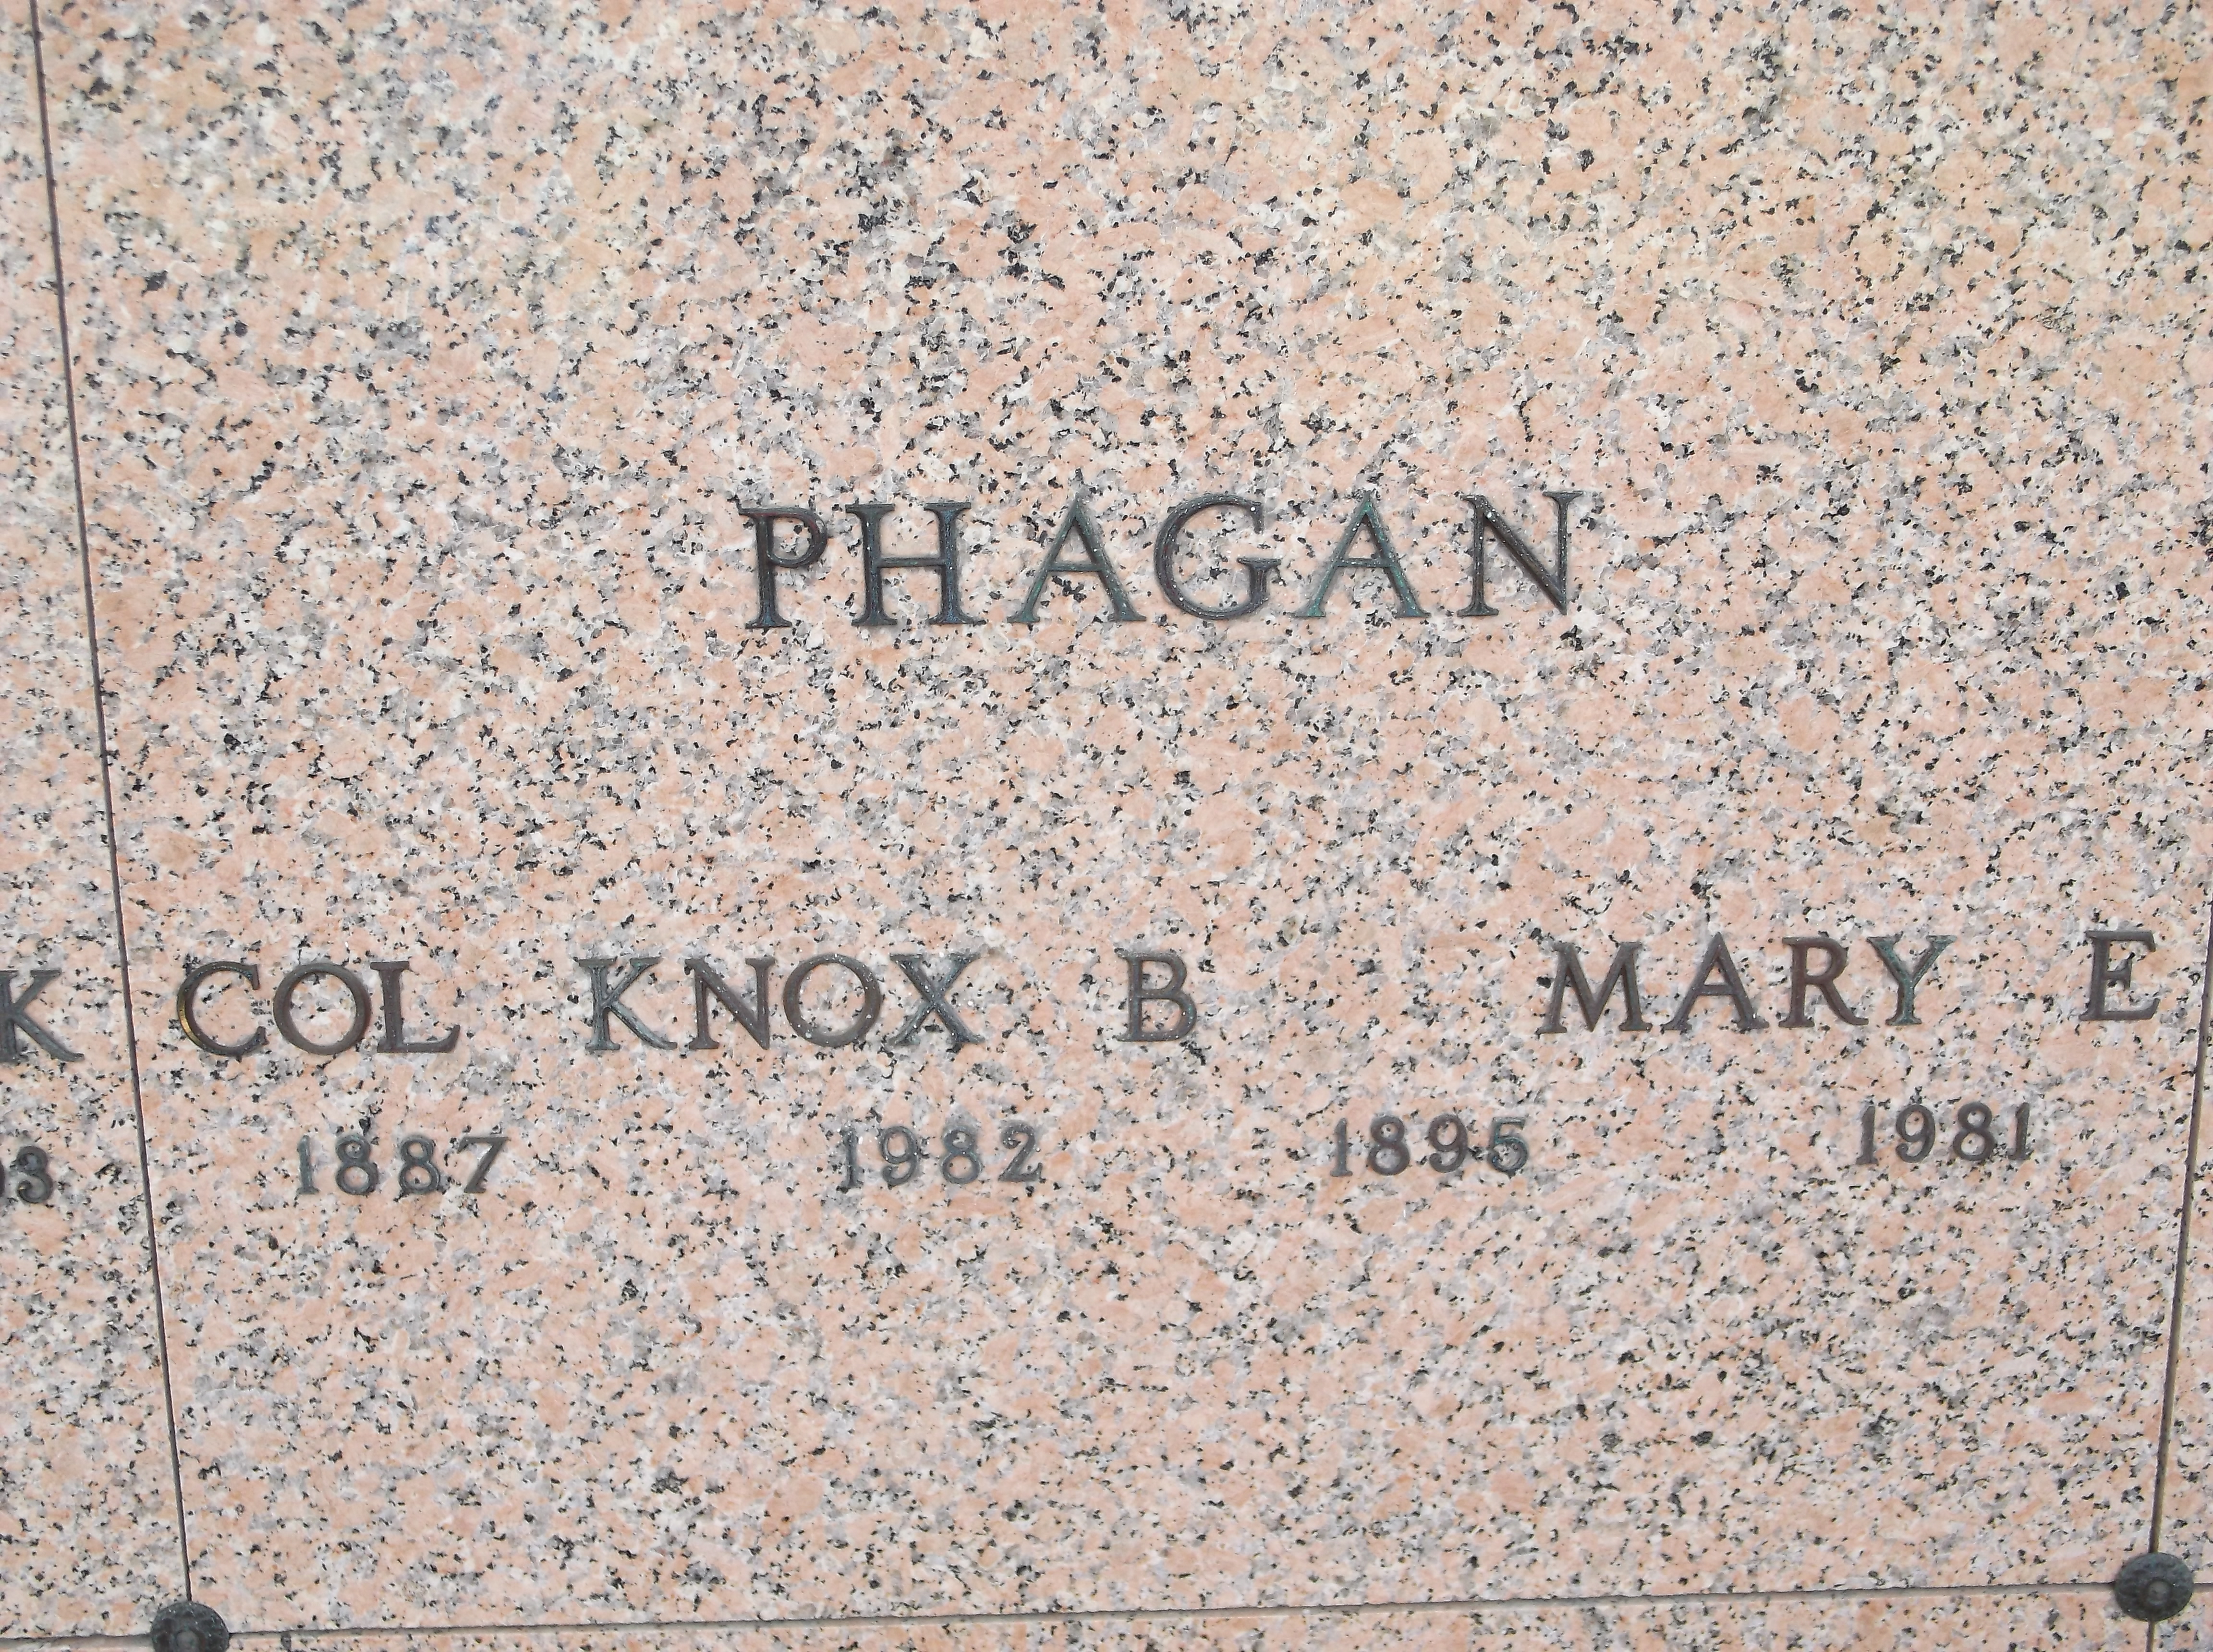 Col Knox B Phagan